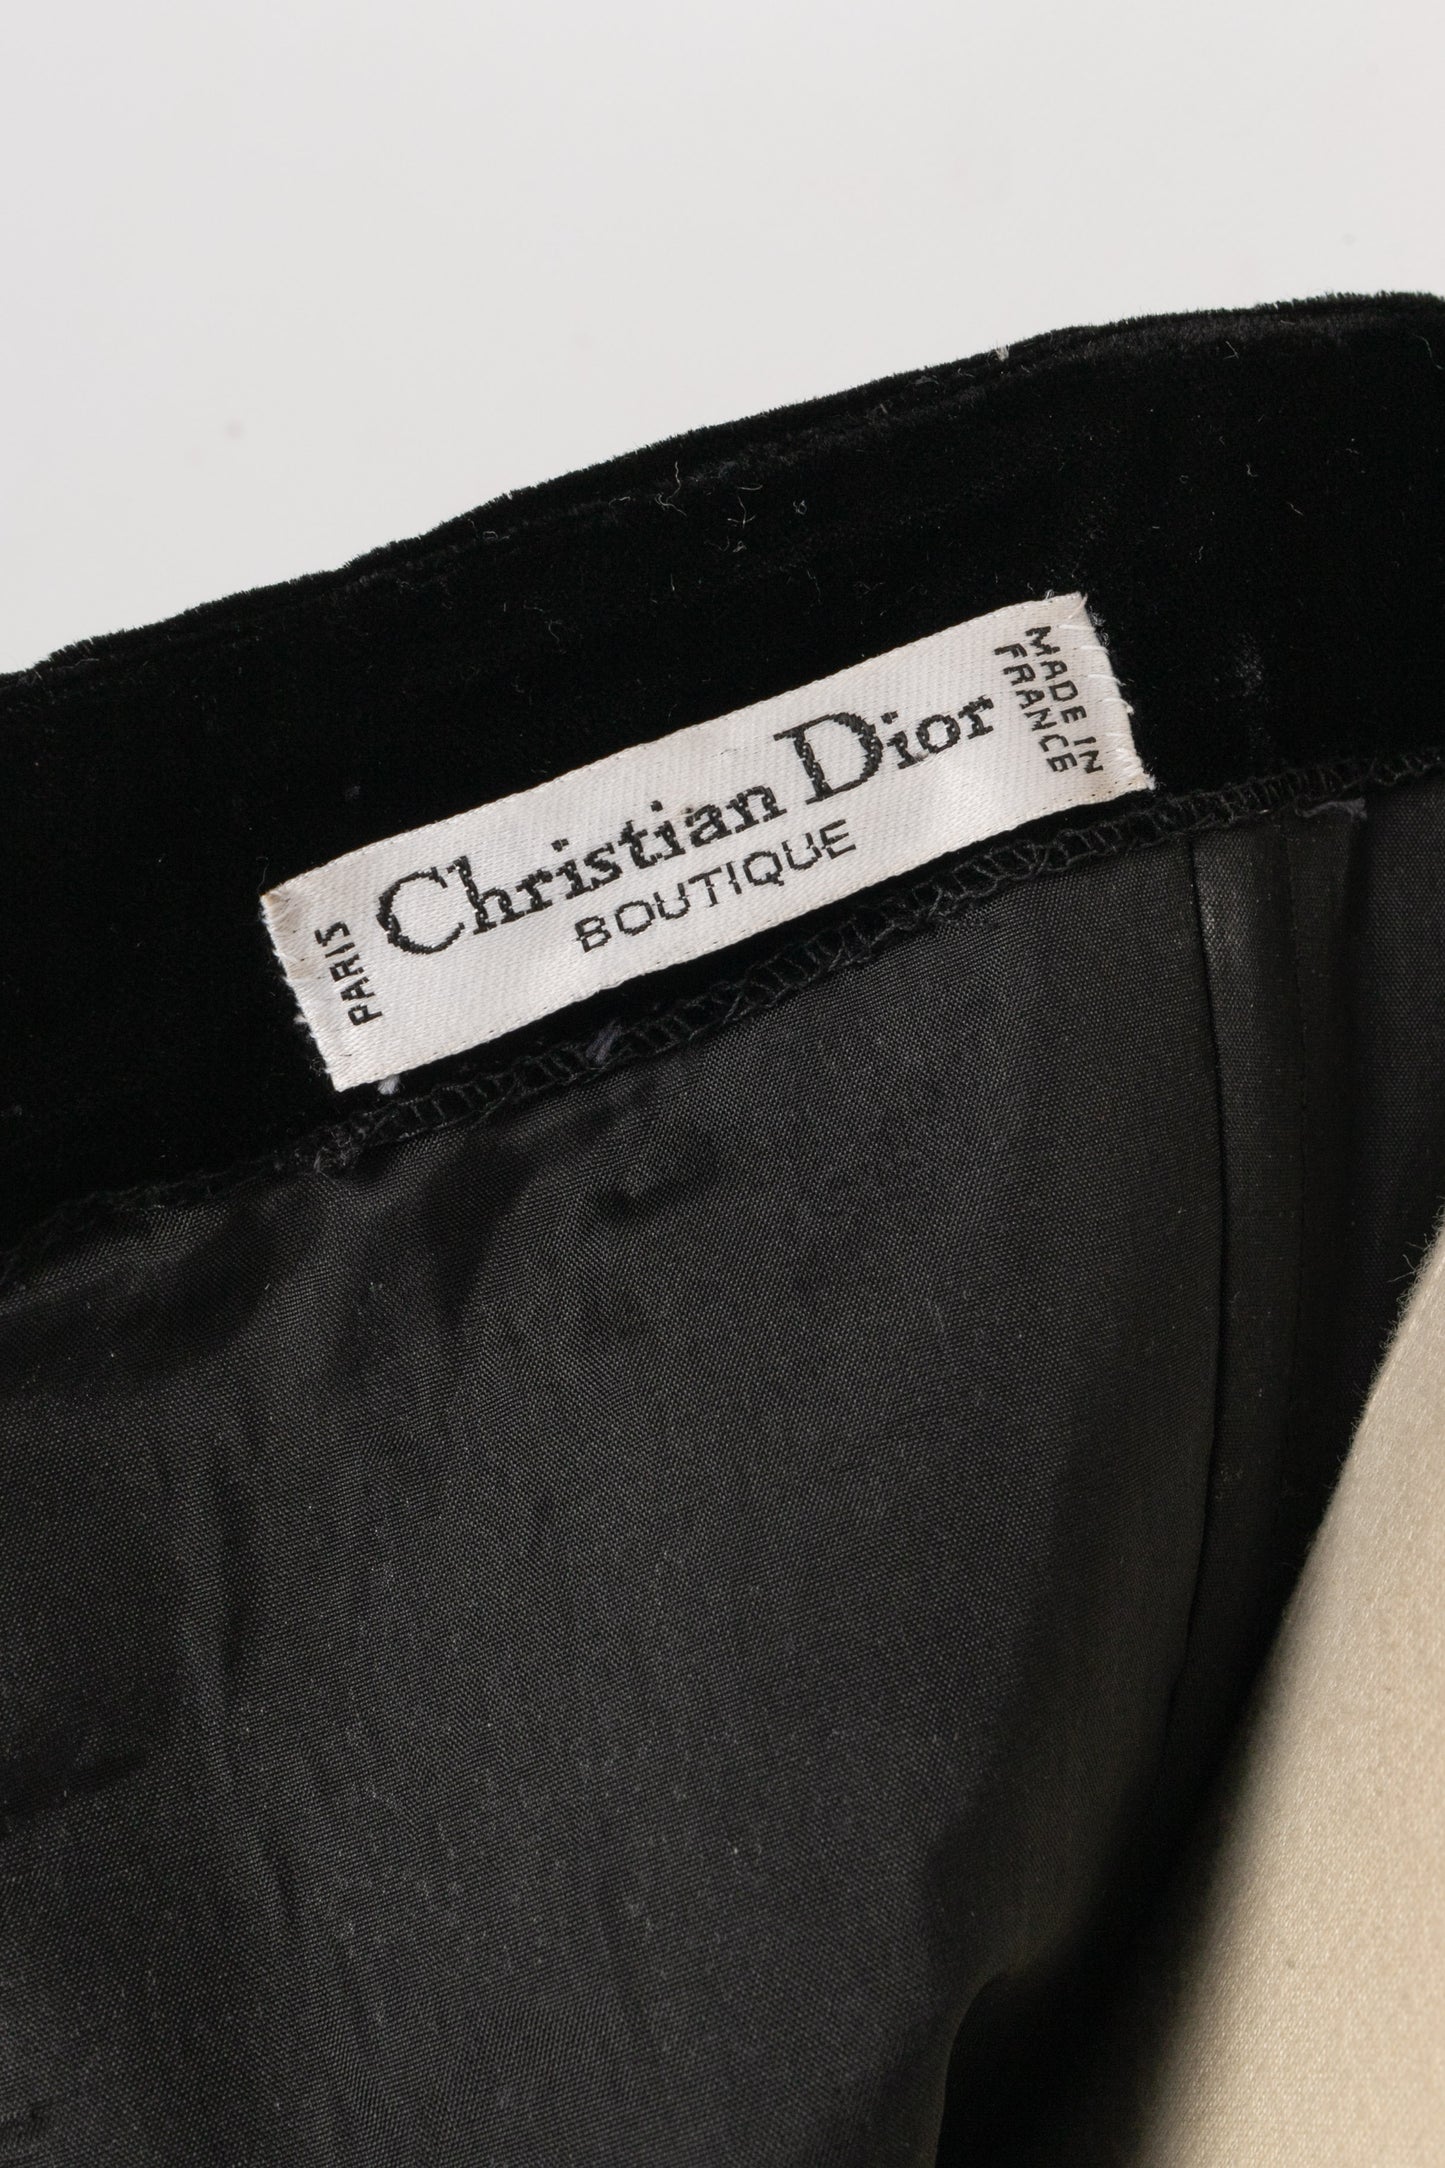 Ensemble Christian Dior